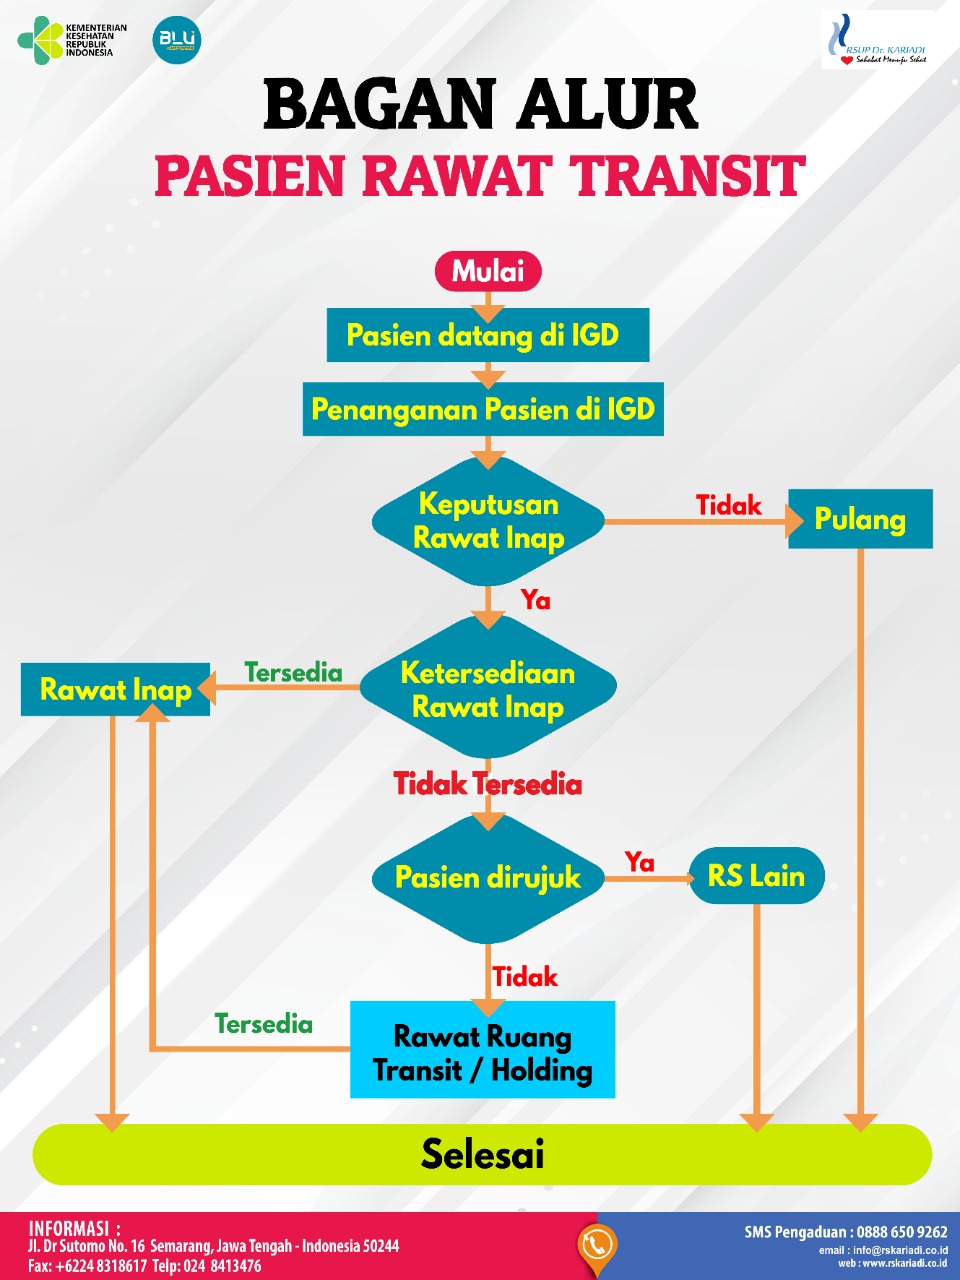 Alur Pelayanan Pasien Rawat Transit